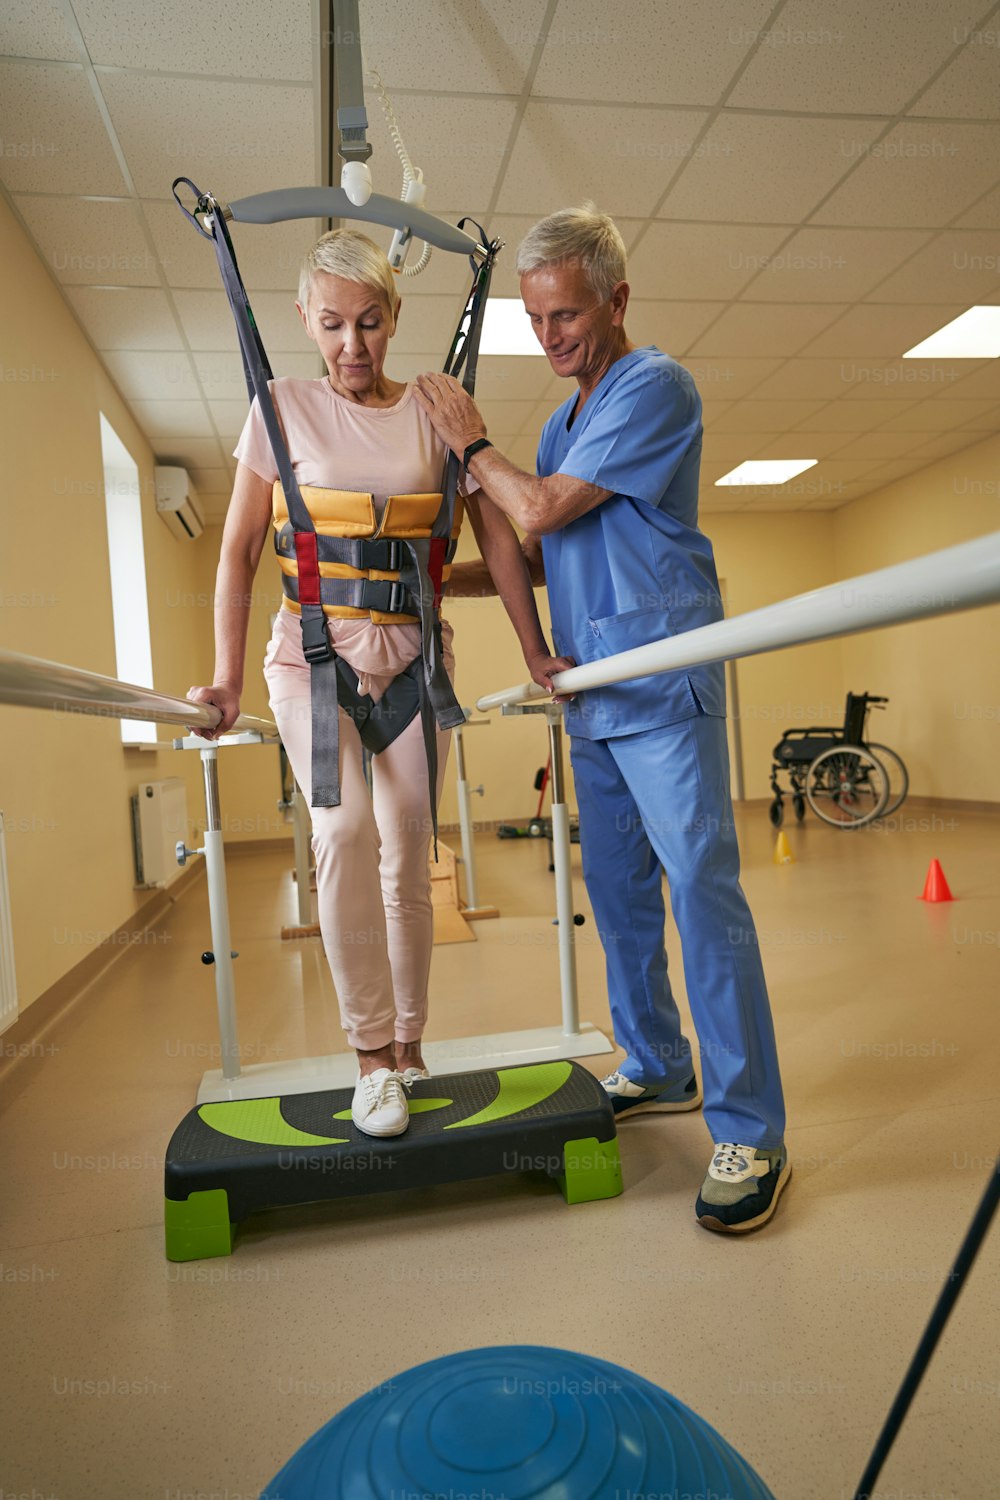 보행 하네스 시스템을 사용하고 재활 클리닉의 계단 플랫폼에서 운동하는 동안 의료 종사자의 도움을 받는 뇌졸중 여성 환자